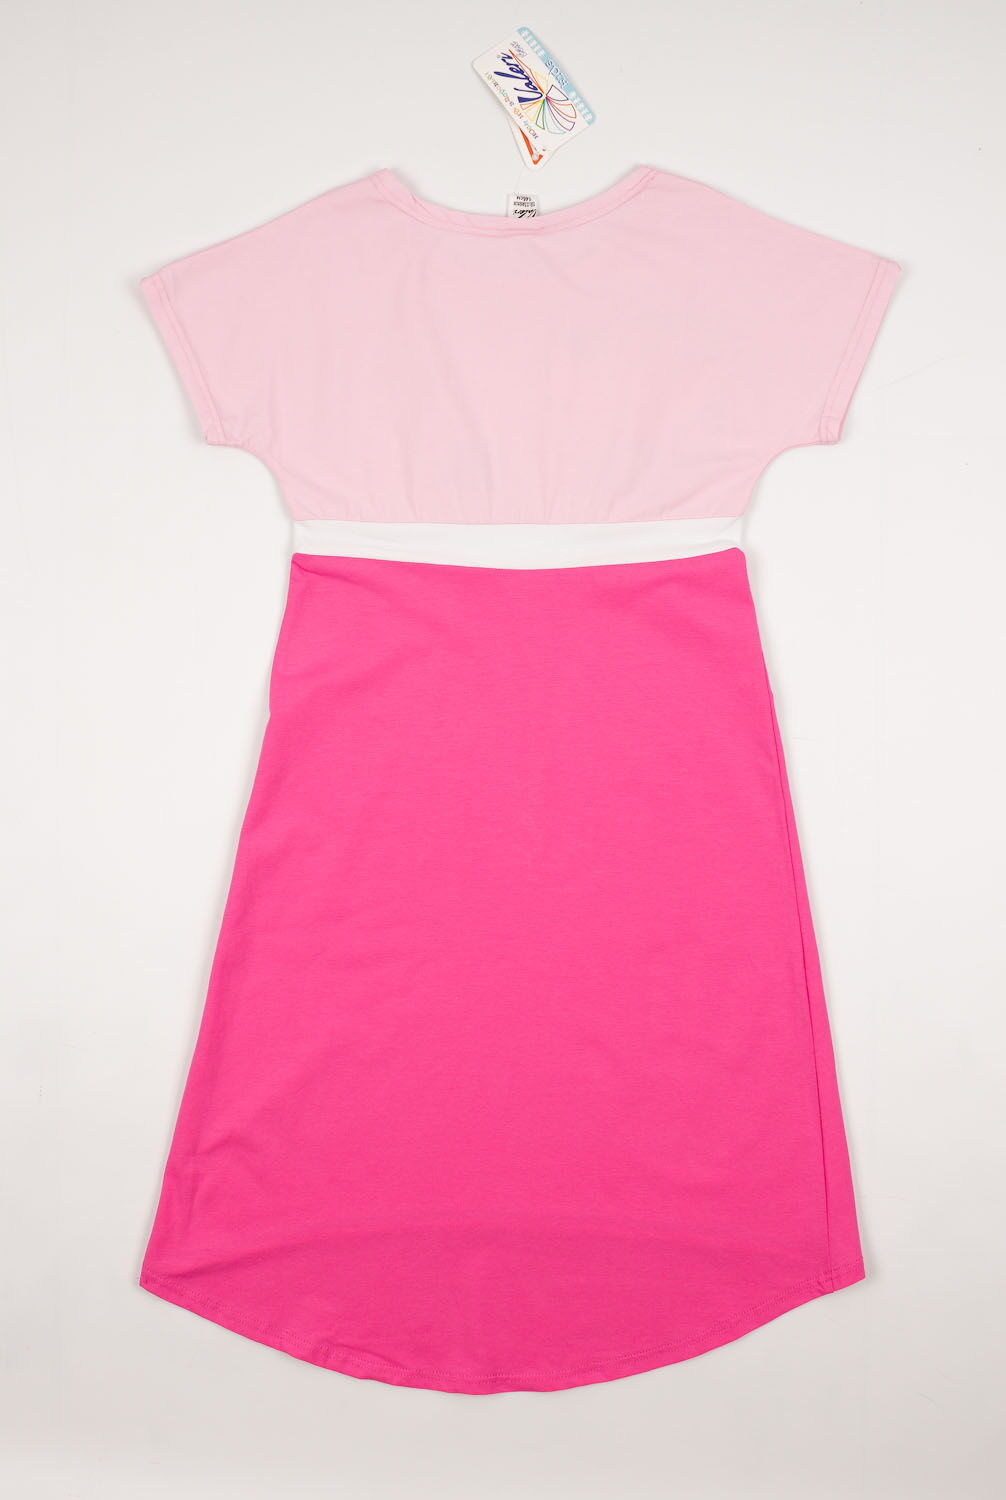 Платье для девочки Valeri tex розовое 1815-55-042 - размеры